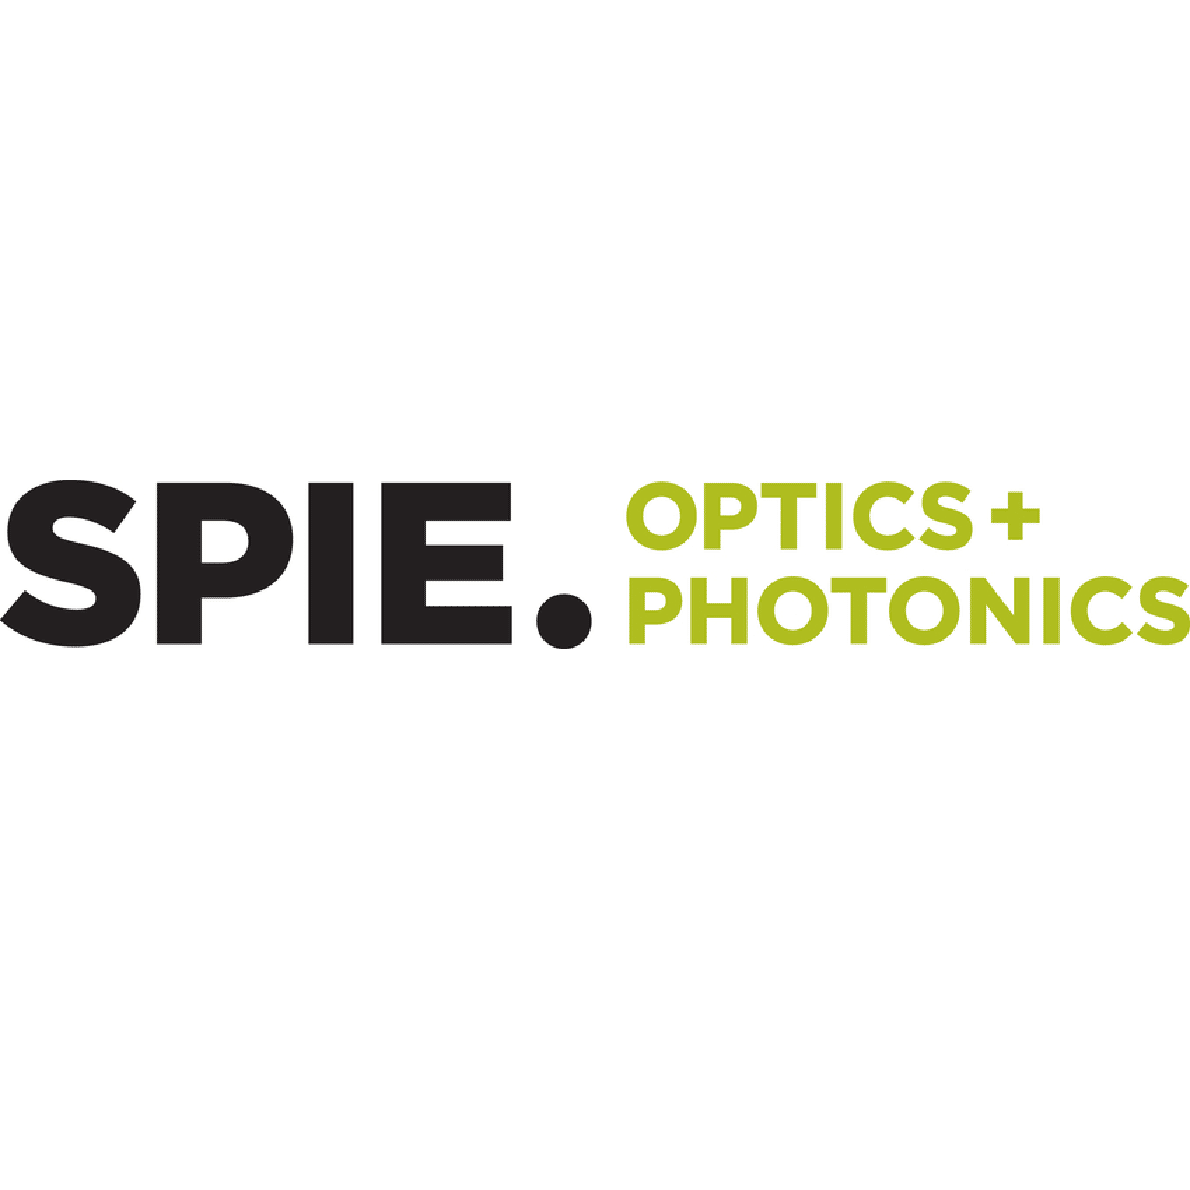 SPIE Optics + Photonics